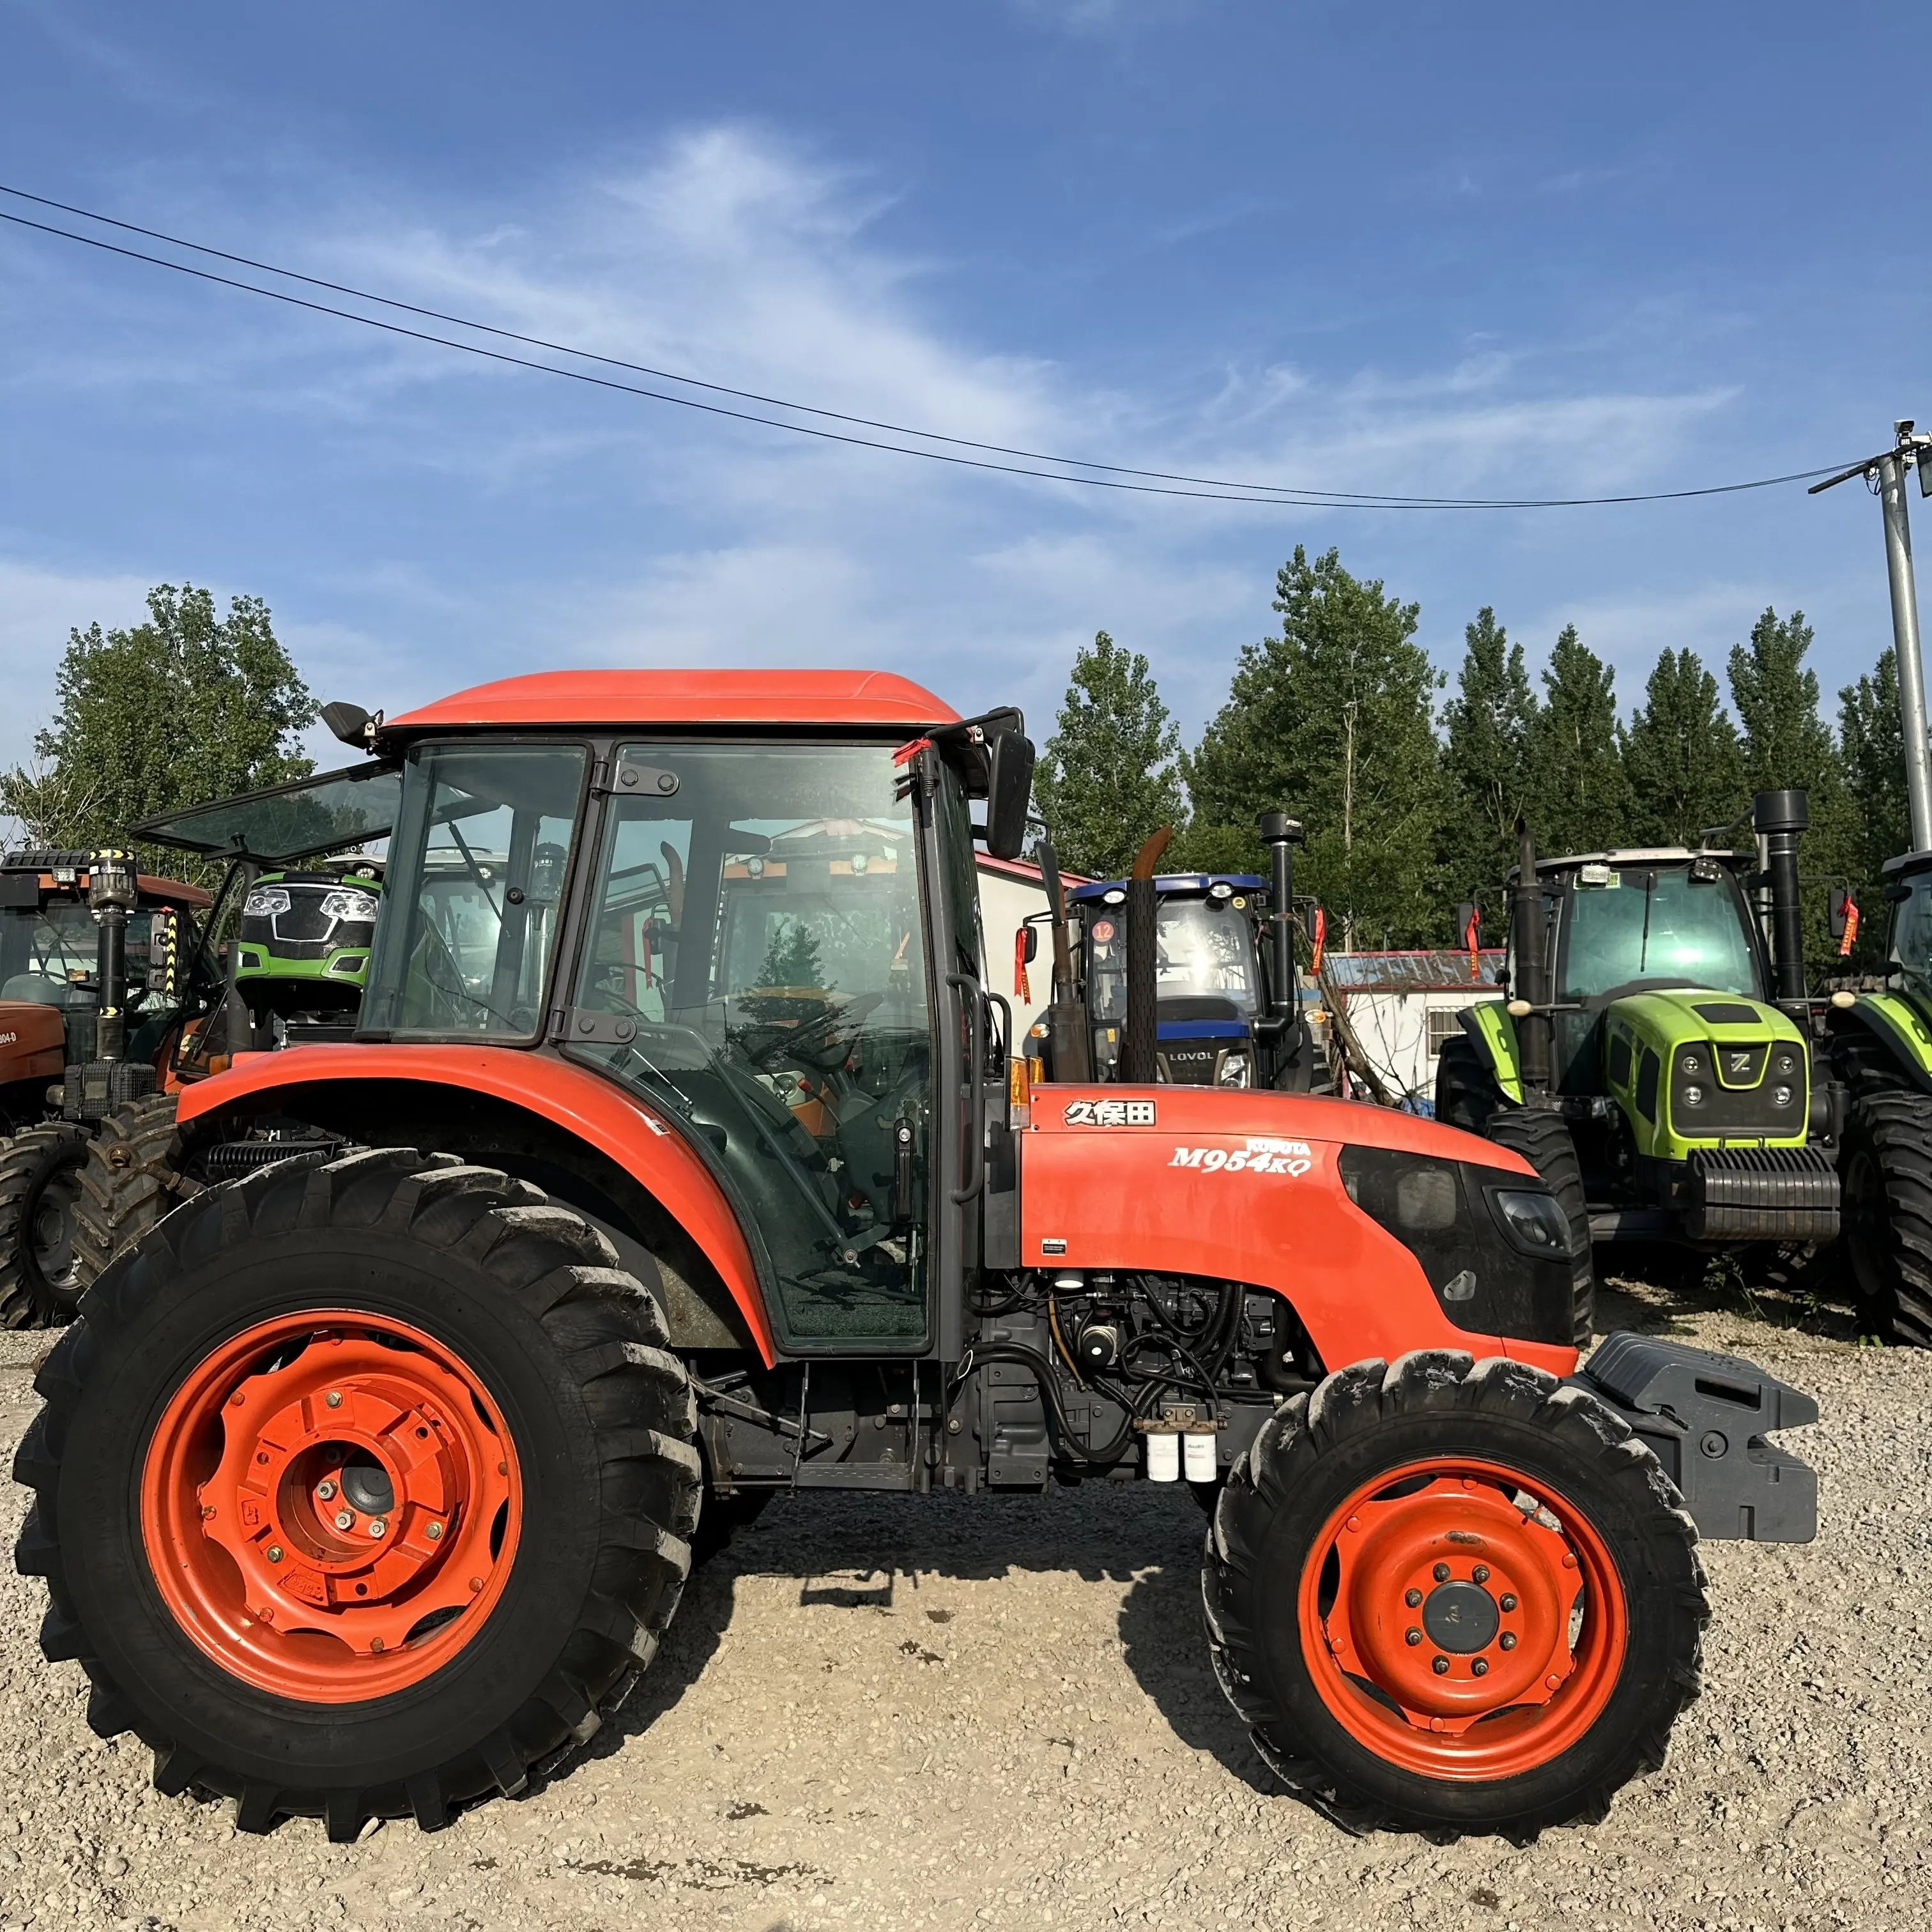 Kuchina mchina kq 95HP 4WD kullanılan çiftlik traktörü sağlanan traktörler Ls artı 80 komple motor satış çin tekerlekli traktör 2017 3500